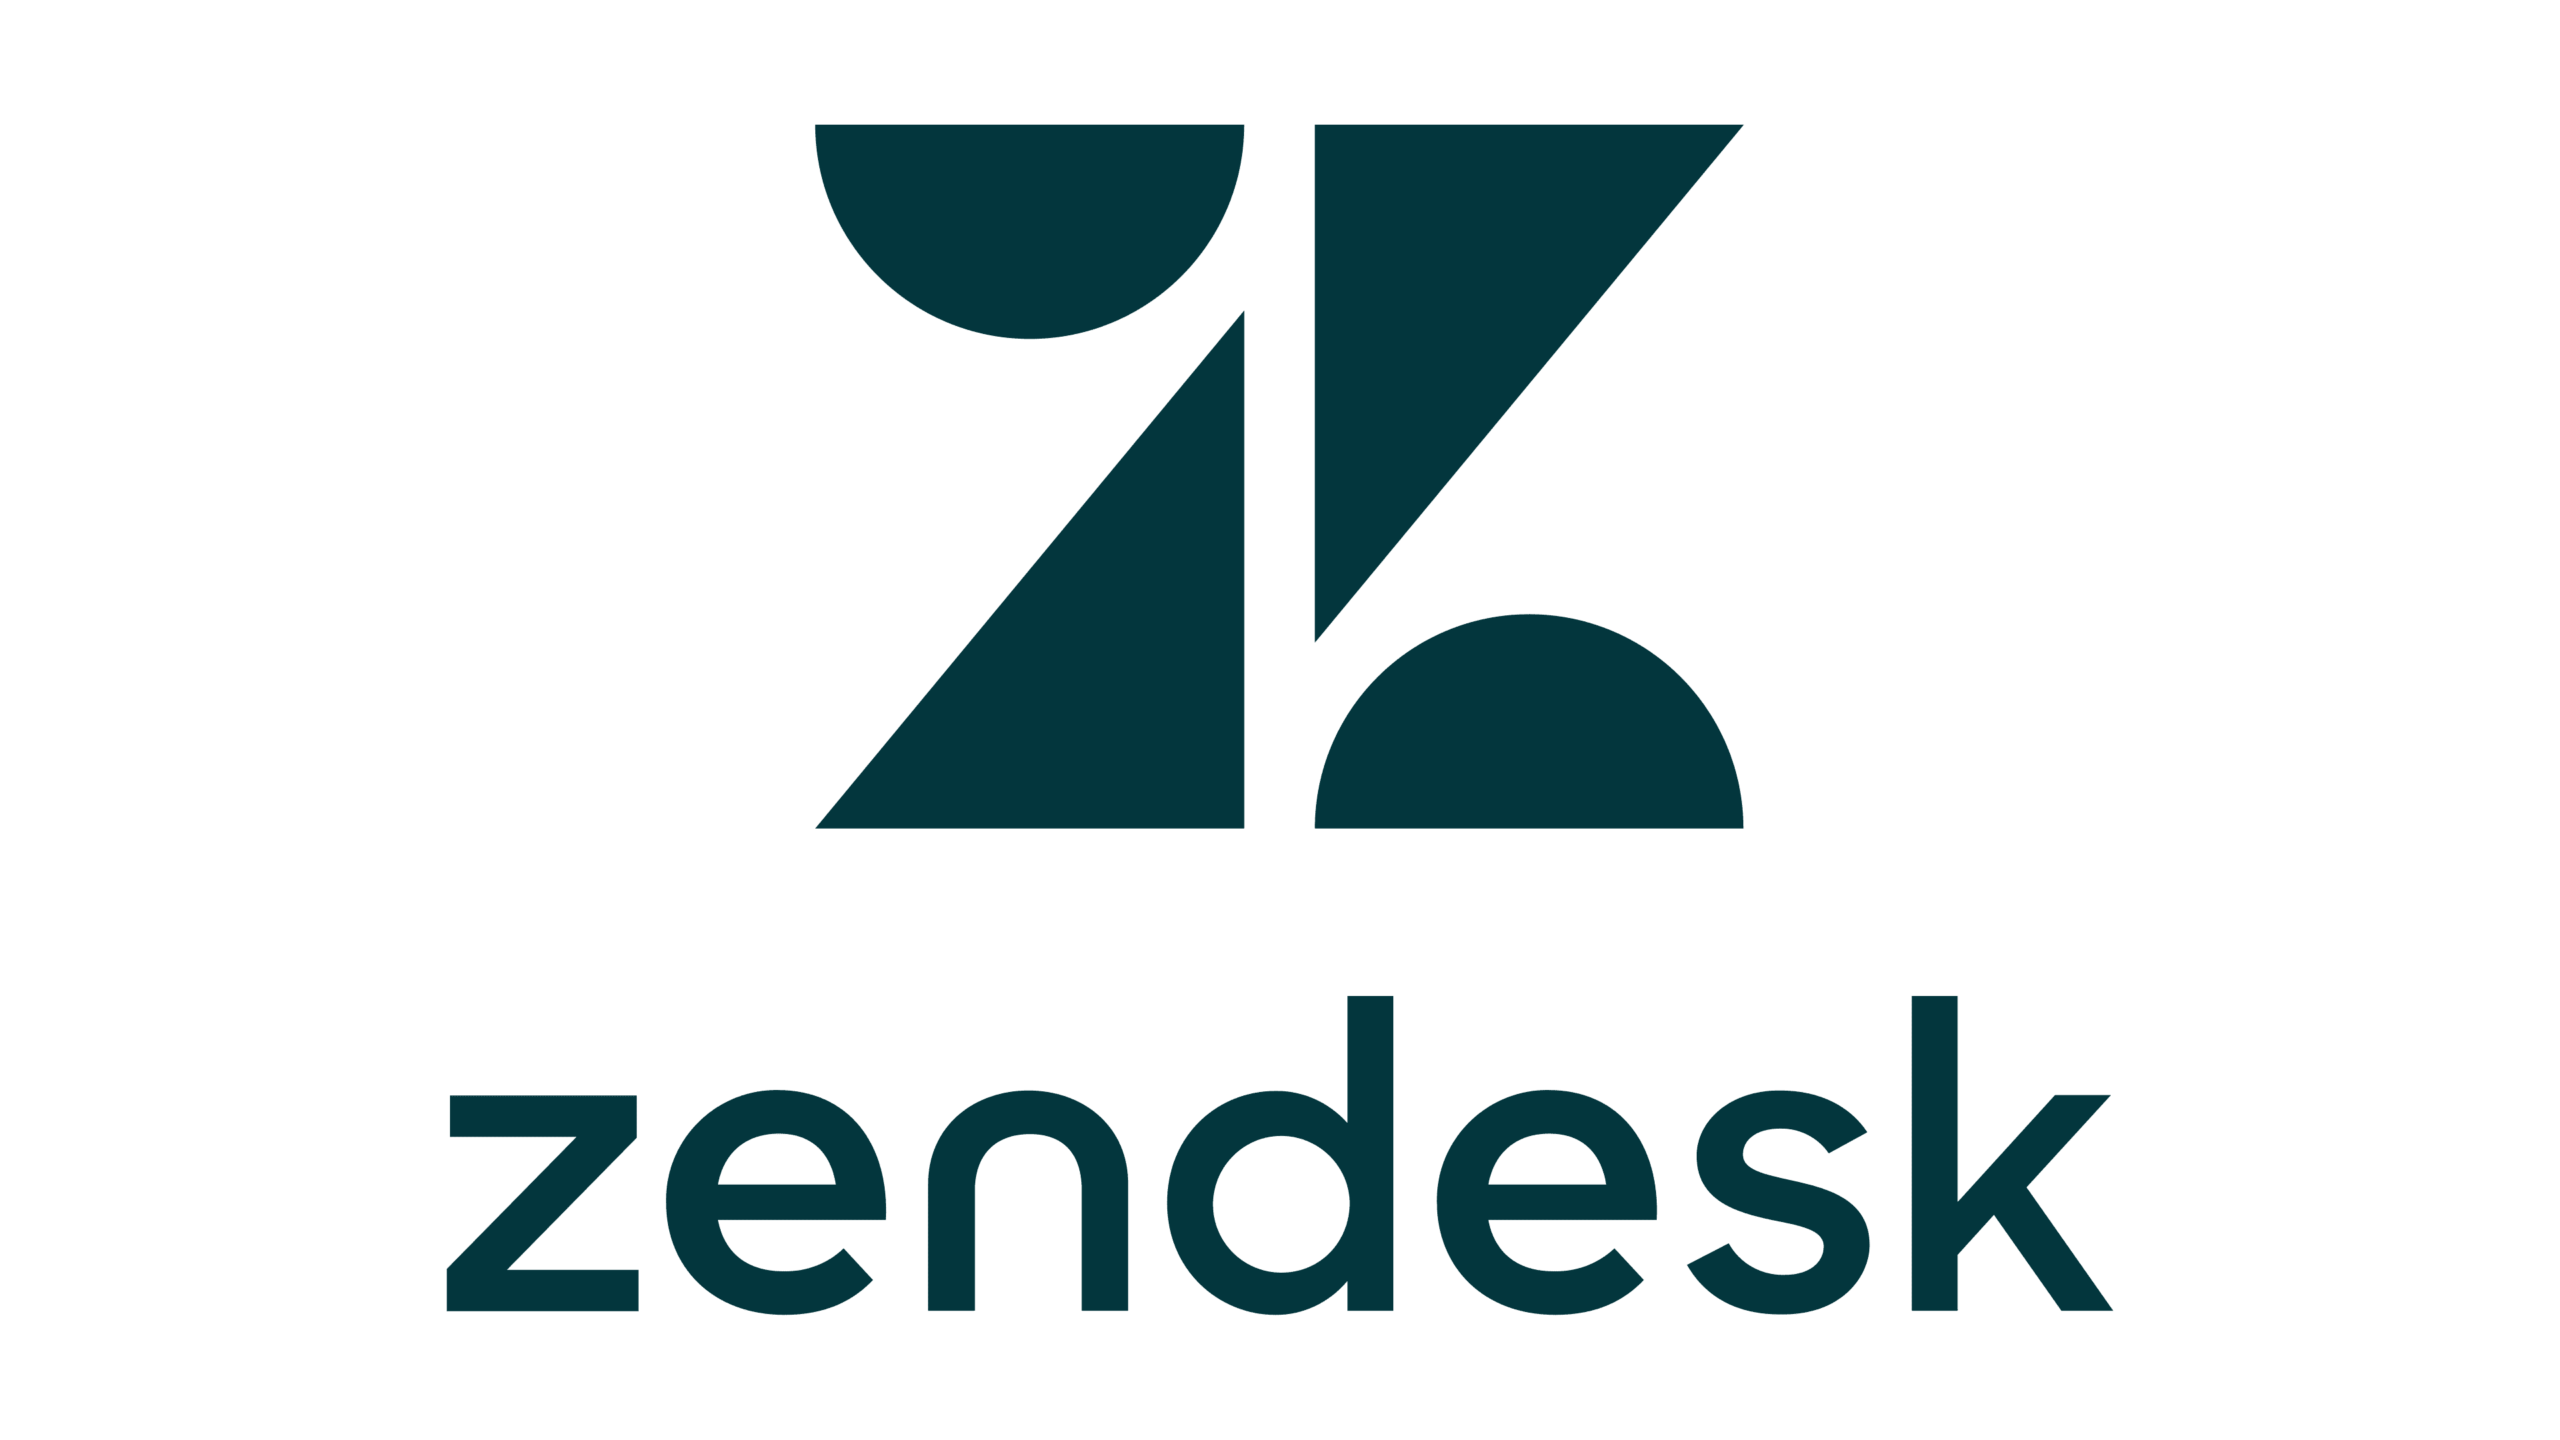 zendesk.com